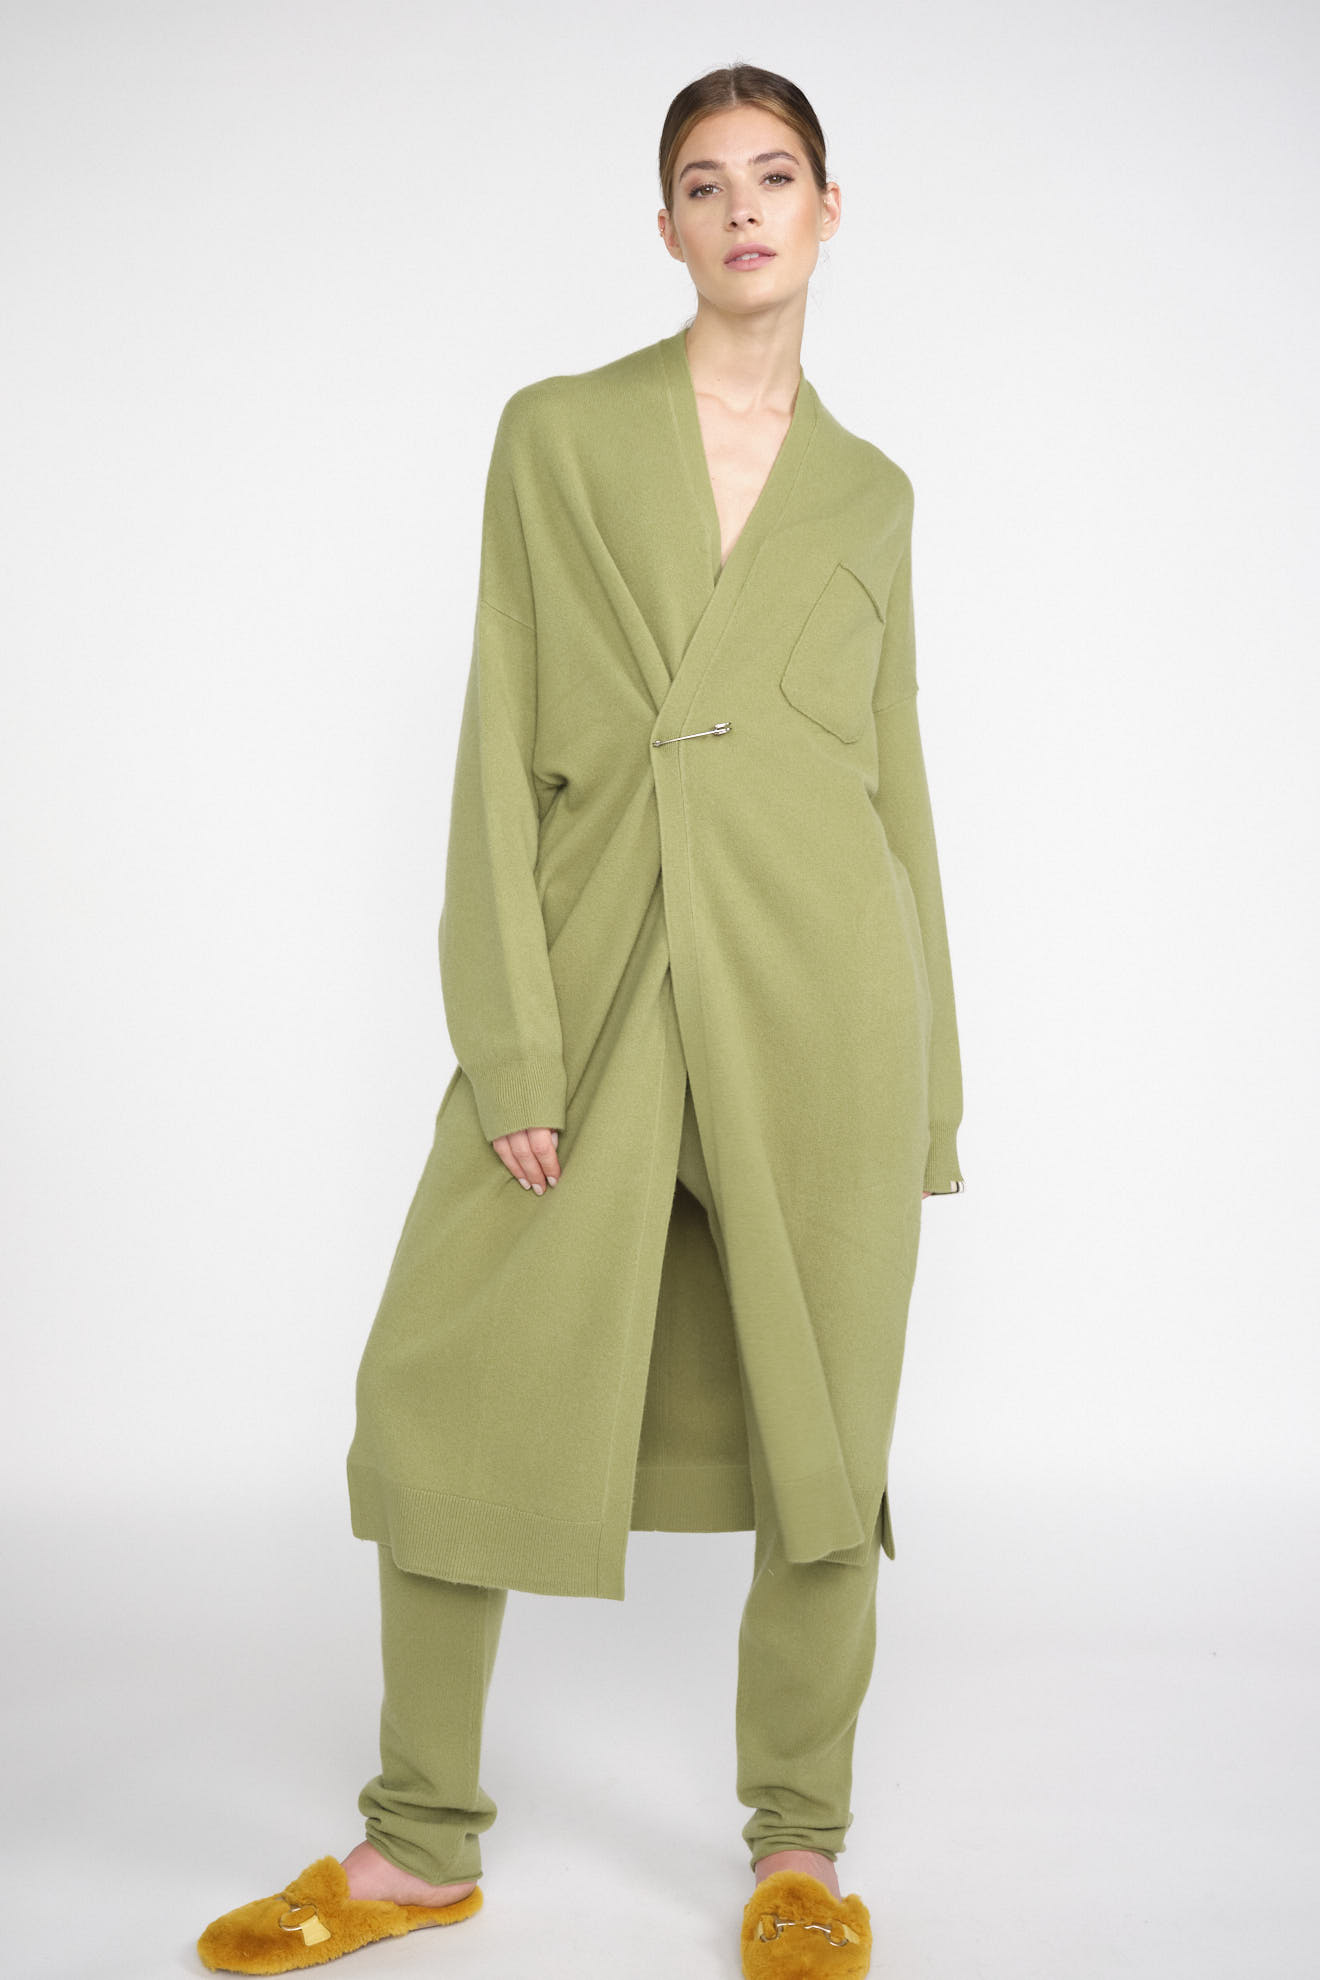 Extreme Cashmere Knit Koto Taille unique vert